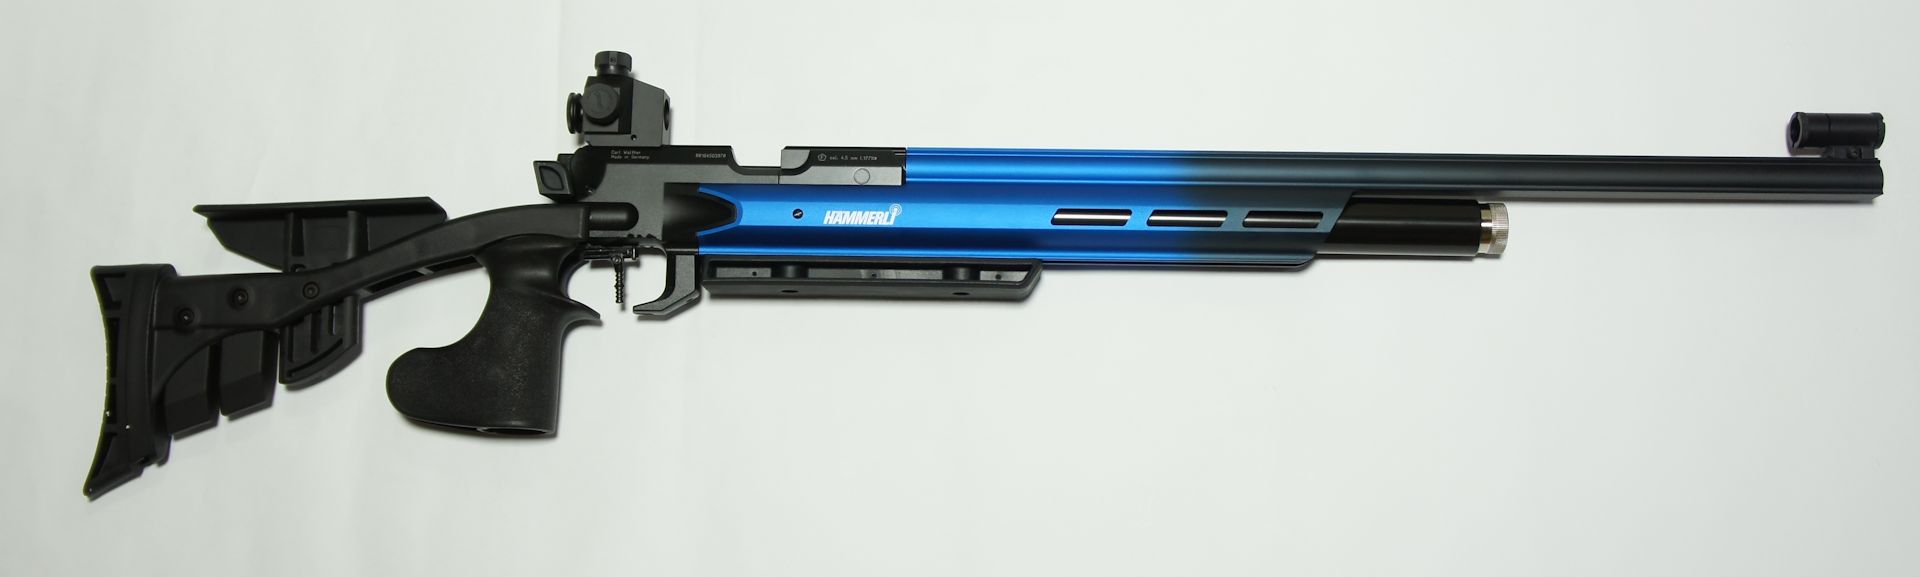 Hämmerli AR 20  Deep Blue, rechts,  4,5mm